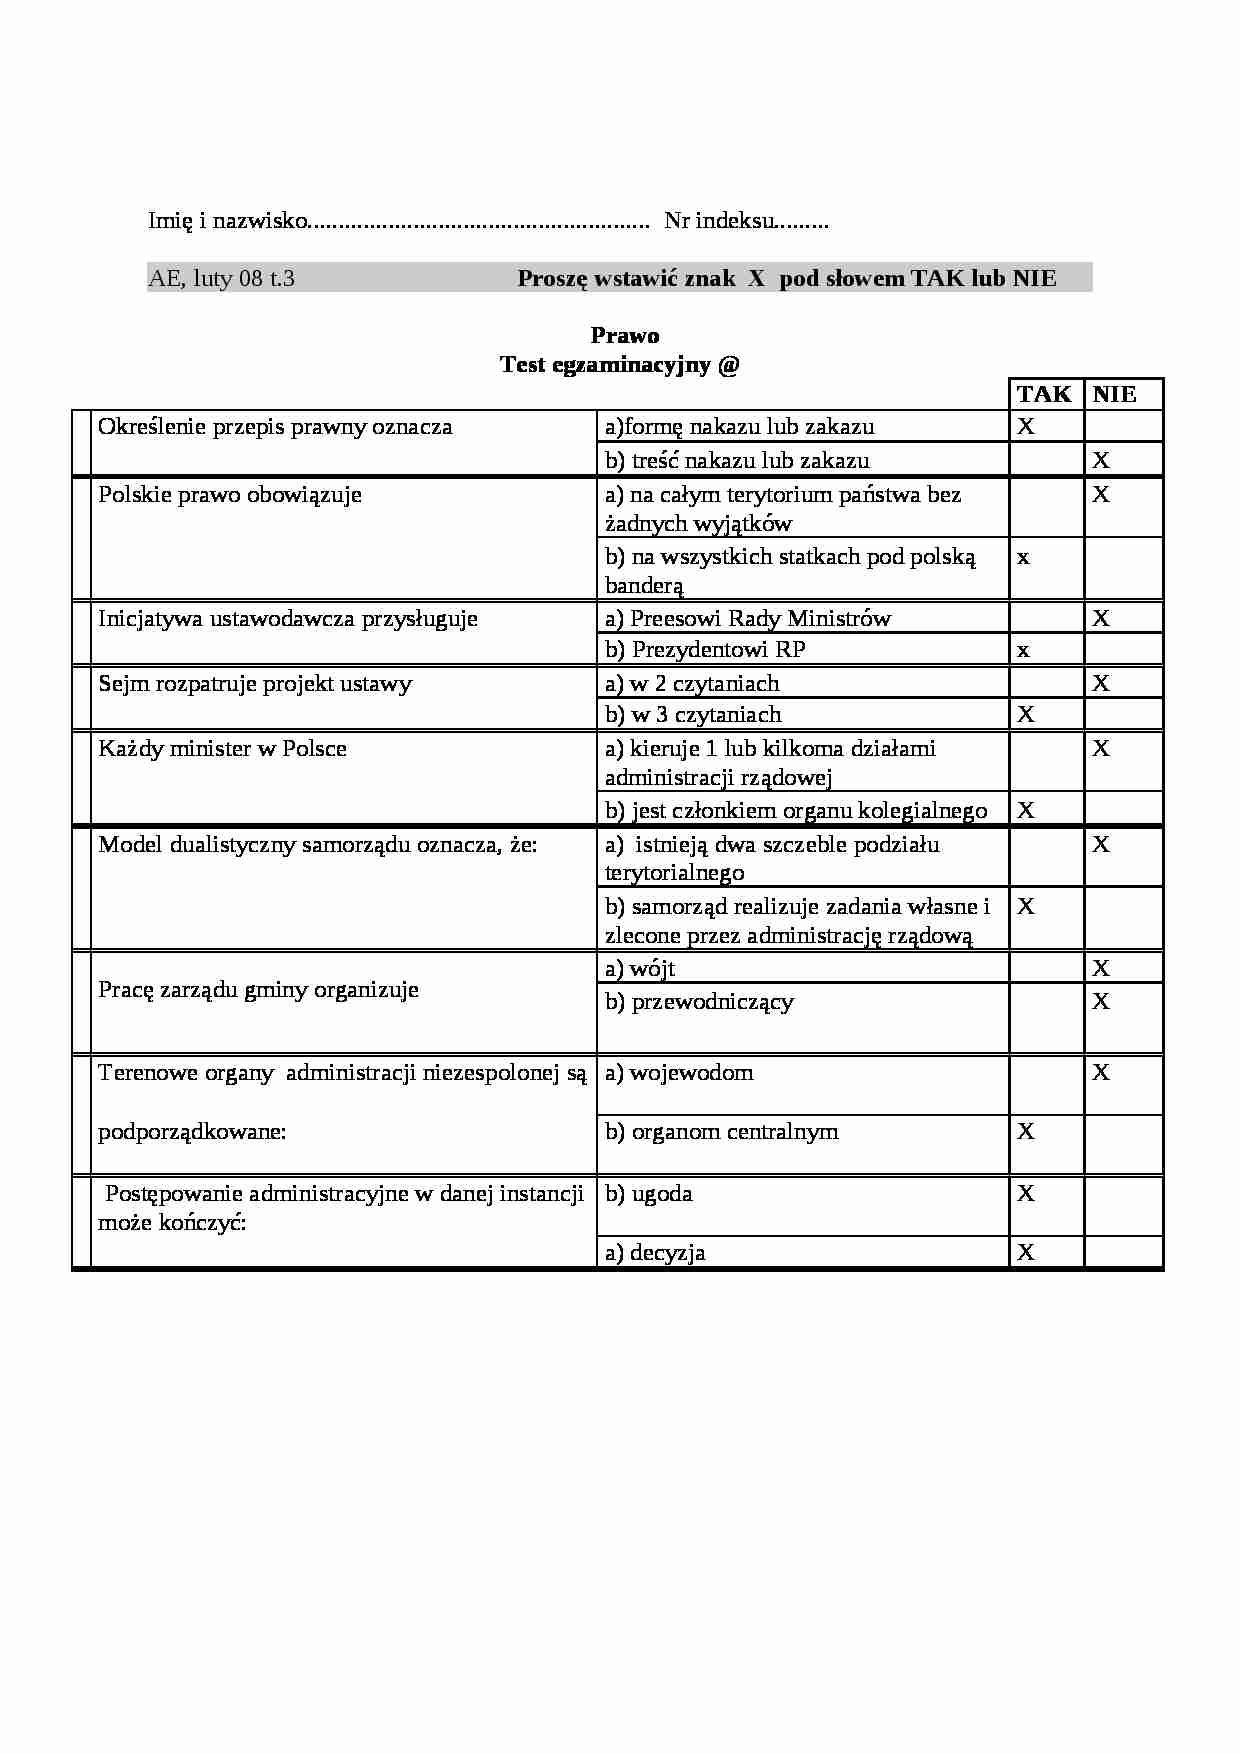 Podstawy Prawa- pytania i odpowiedzi egzaminacyjne rok 2008  - strona 1